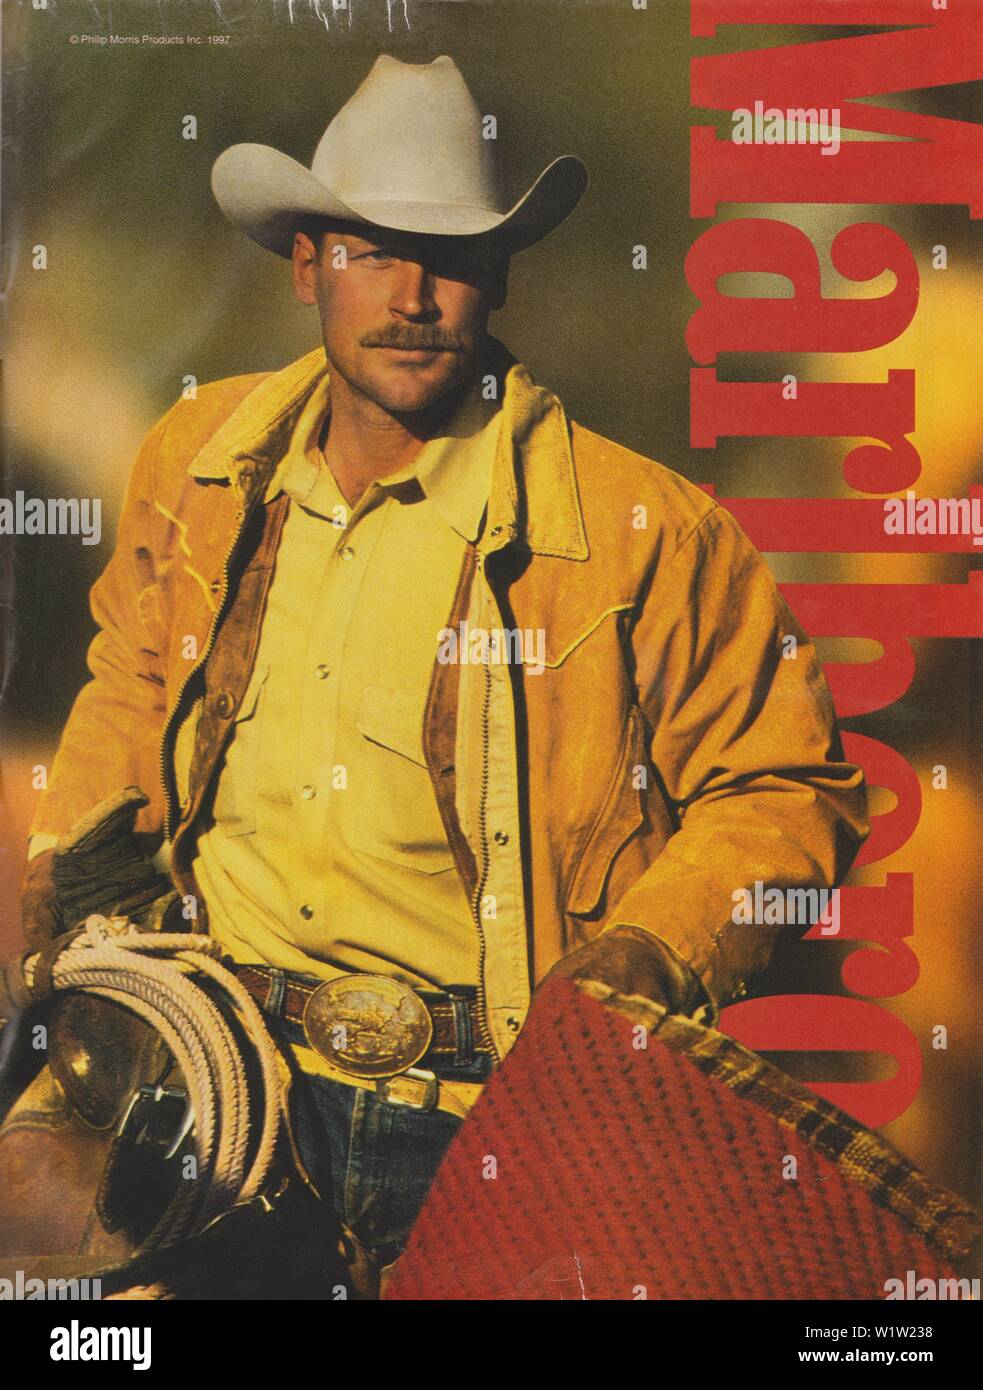 Poster pubblicitari sigarette Marlboro, magazine 1997, non lo slogan pubblicitario creativo Marlboro da Philip Morris da anni novanta Foto Stock